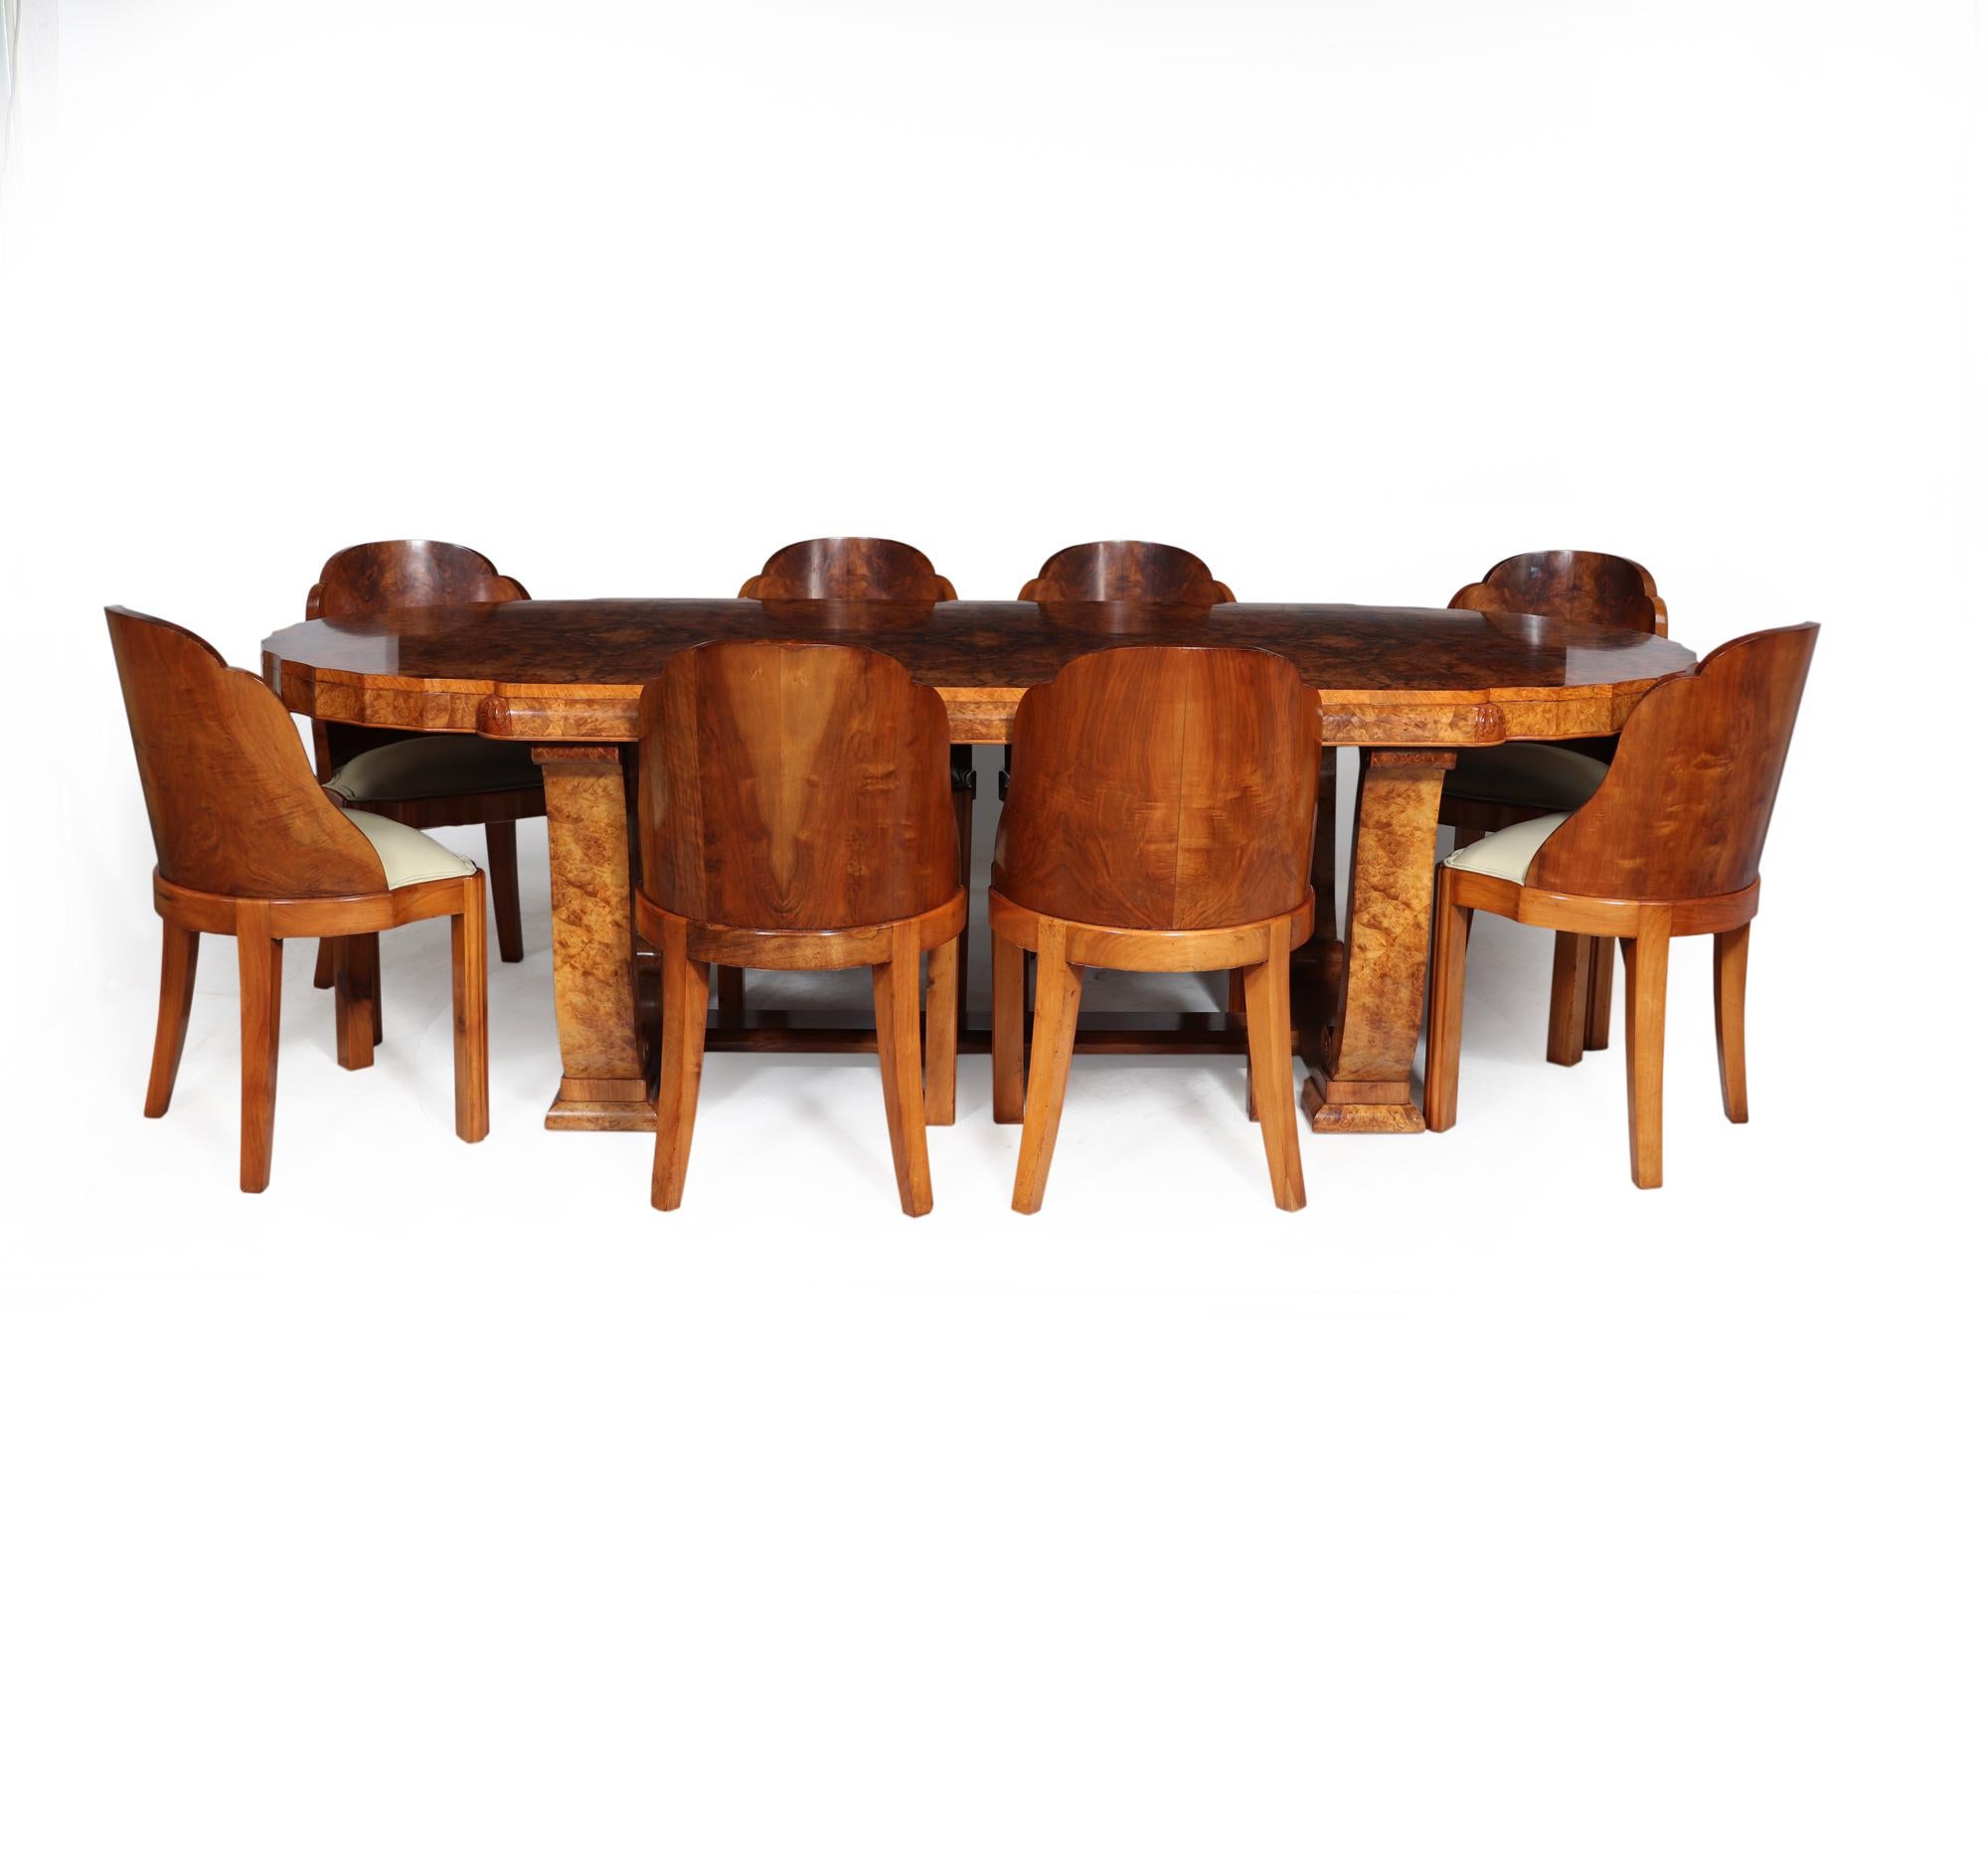 Eine britische Art Deco Dining Suite von Hille in London in den 1930er Jahren produziert Der Tisch hat eine große einteilige Platte mit stark gemaserten Gratnuss Buch abgestimmt Furniere, die geschwungenen Enden sind geriffelt und steht auf einem